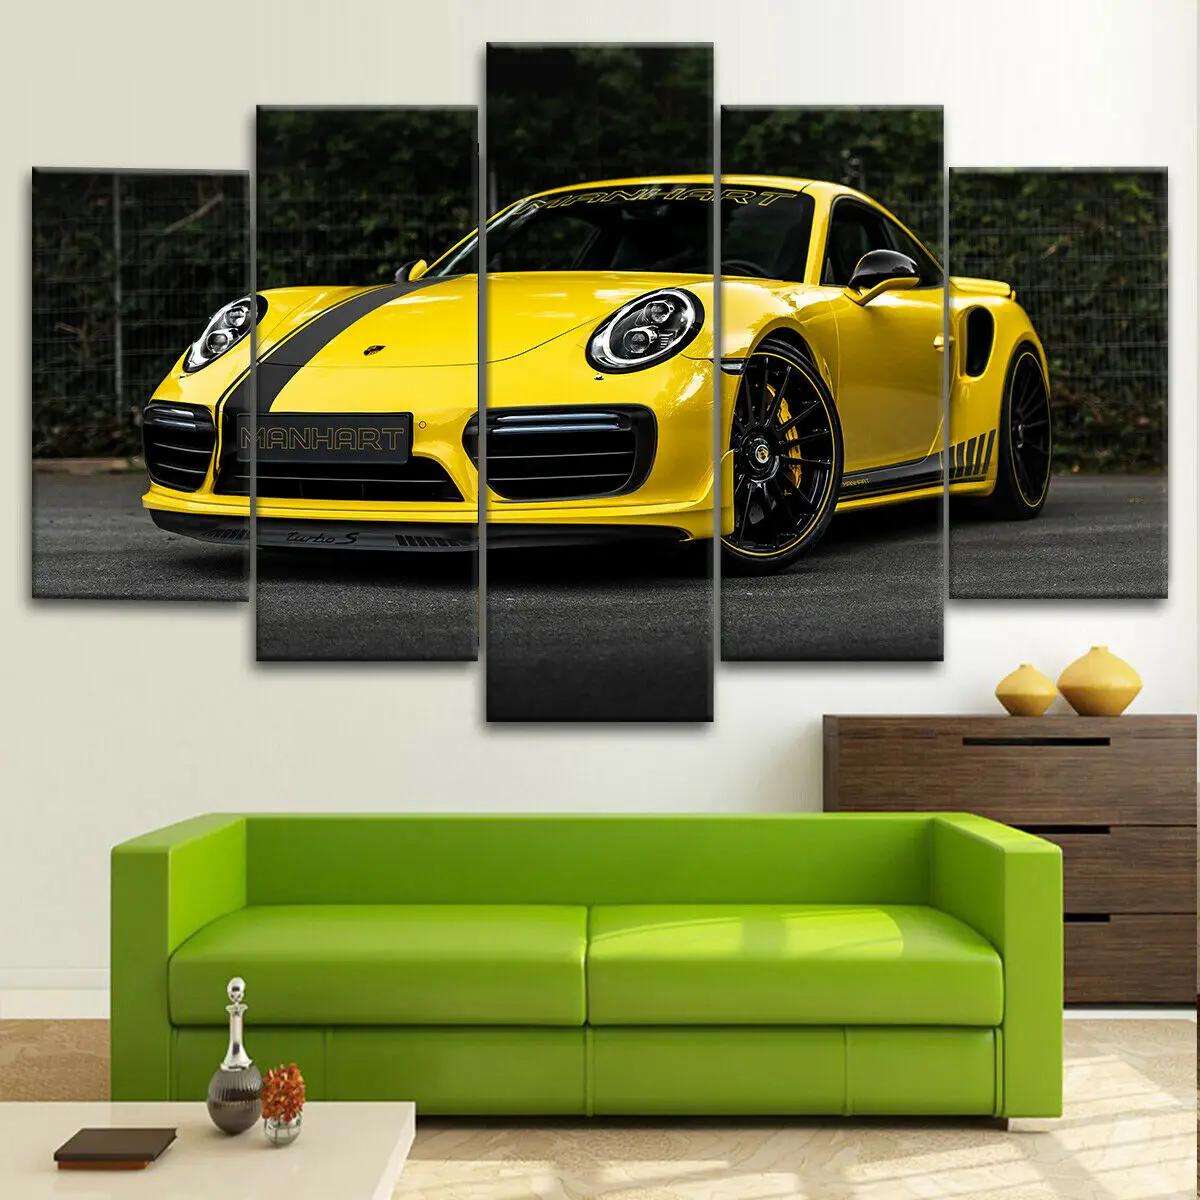 Porsche Manhart 911 Yellow Modern Car 5 Piece Canvas Wall Art HD Print Home Decor No Framed